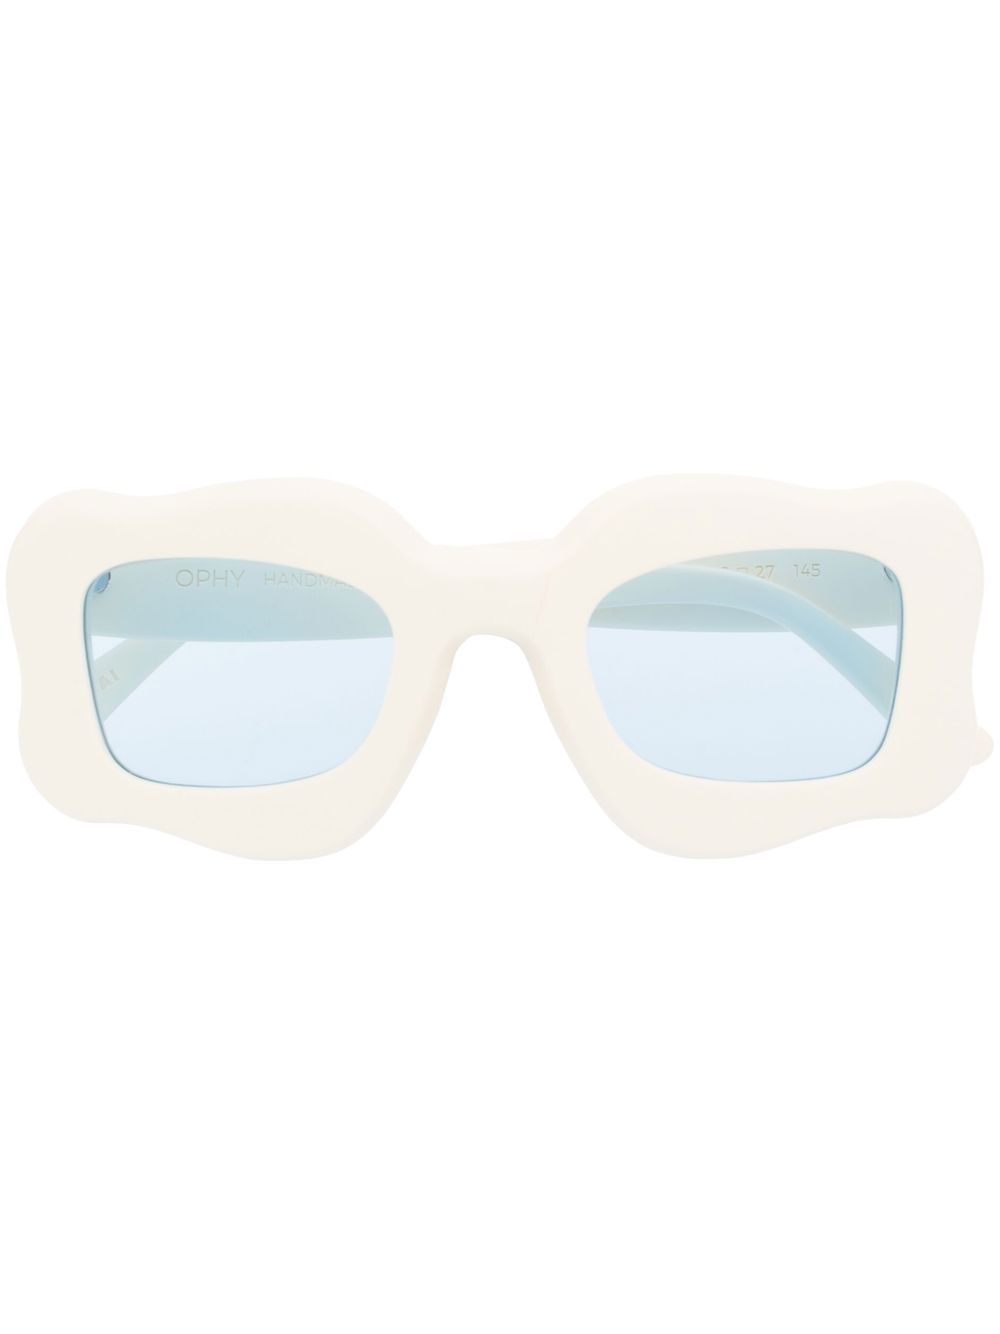 Bonsai Sunglasses White